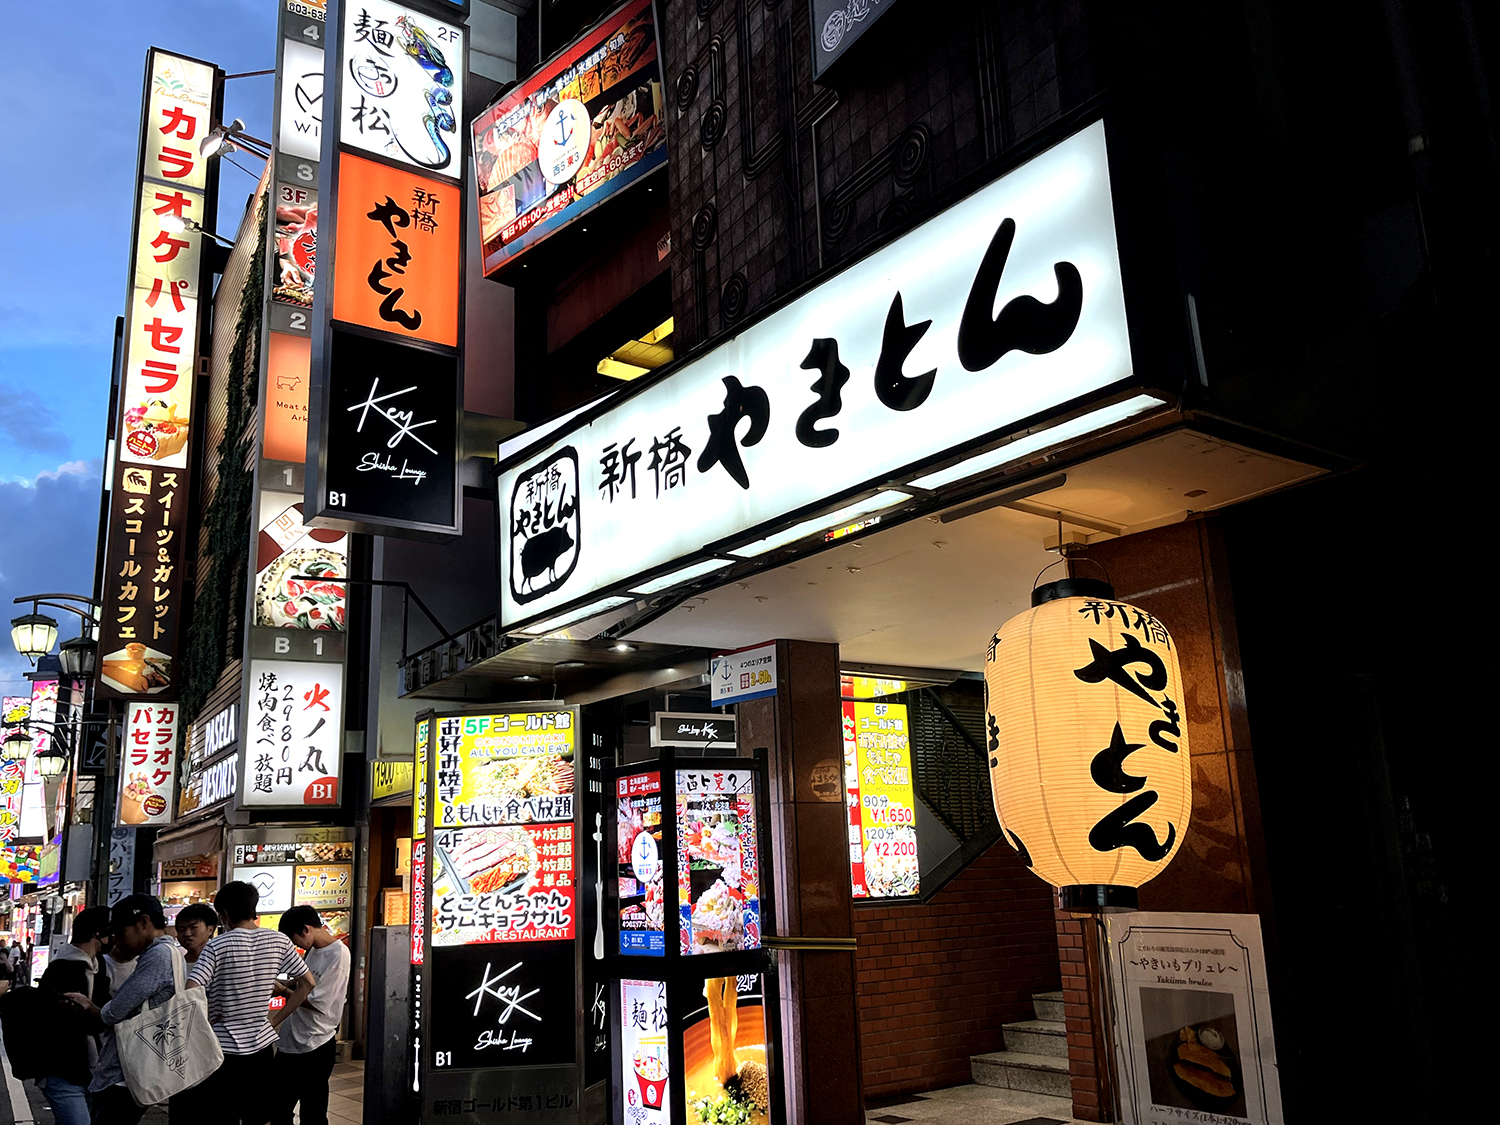 さくら通りを入り、右手の並びを見ながらすぐの雑居ビル。やきとん屋さんの2Fに『麺松 新宿歌舞伎町店』がある。龍のイラストの看板だ。